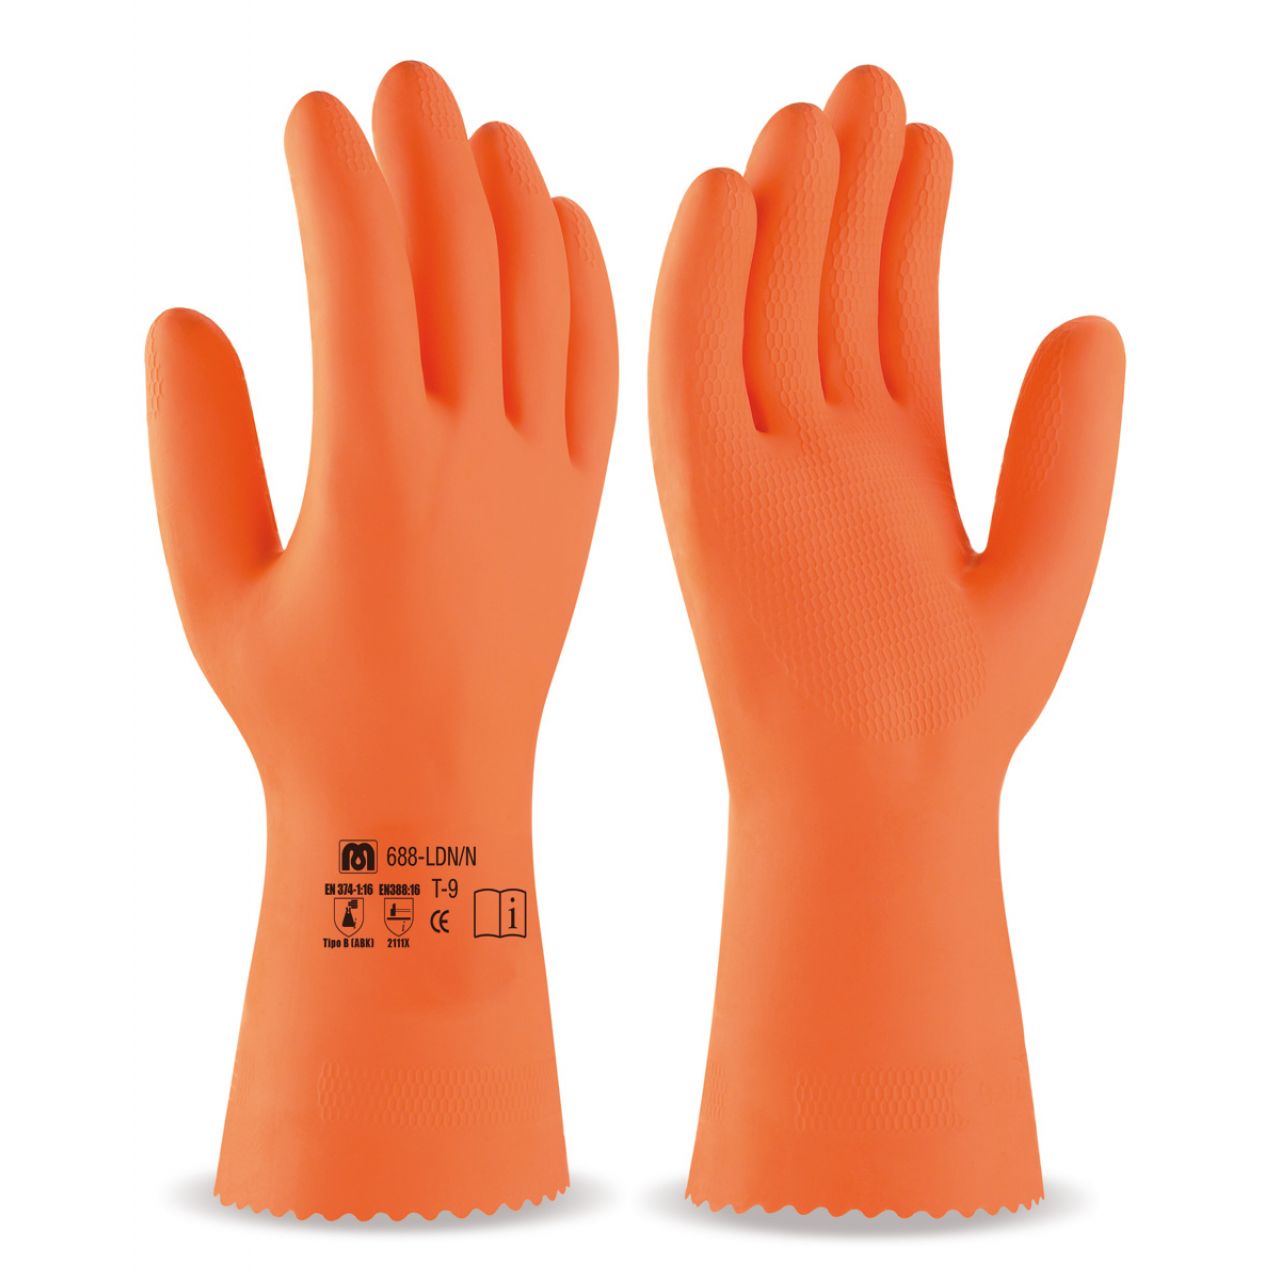 688LDNNN Guante tipo industrial de látex en color naranja para riesgos mecánicos, químicos y microorganismos.